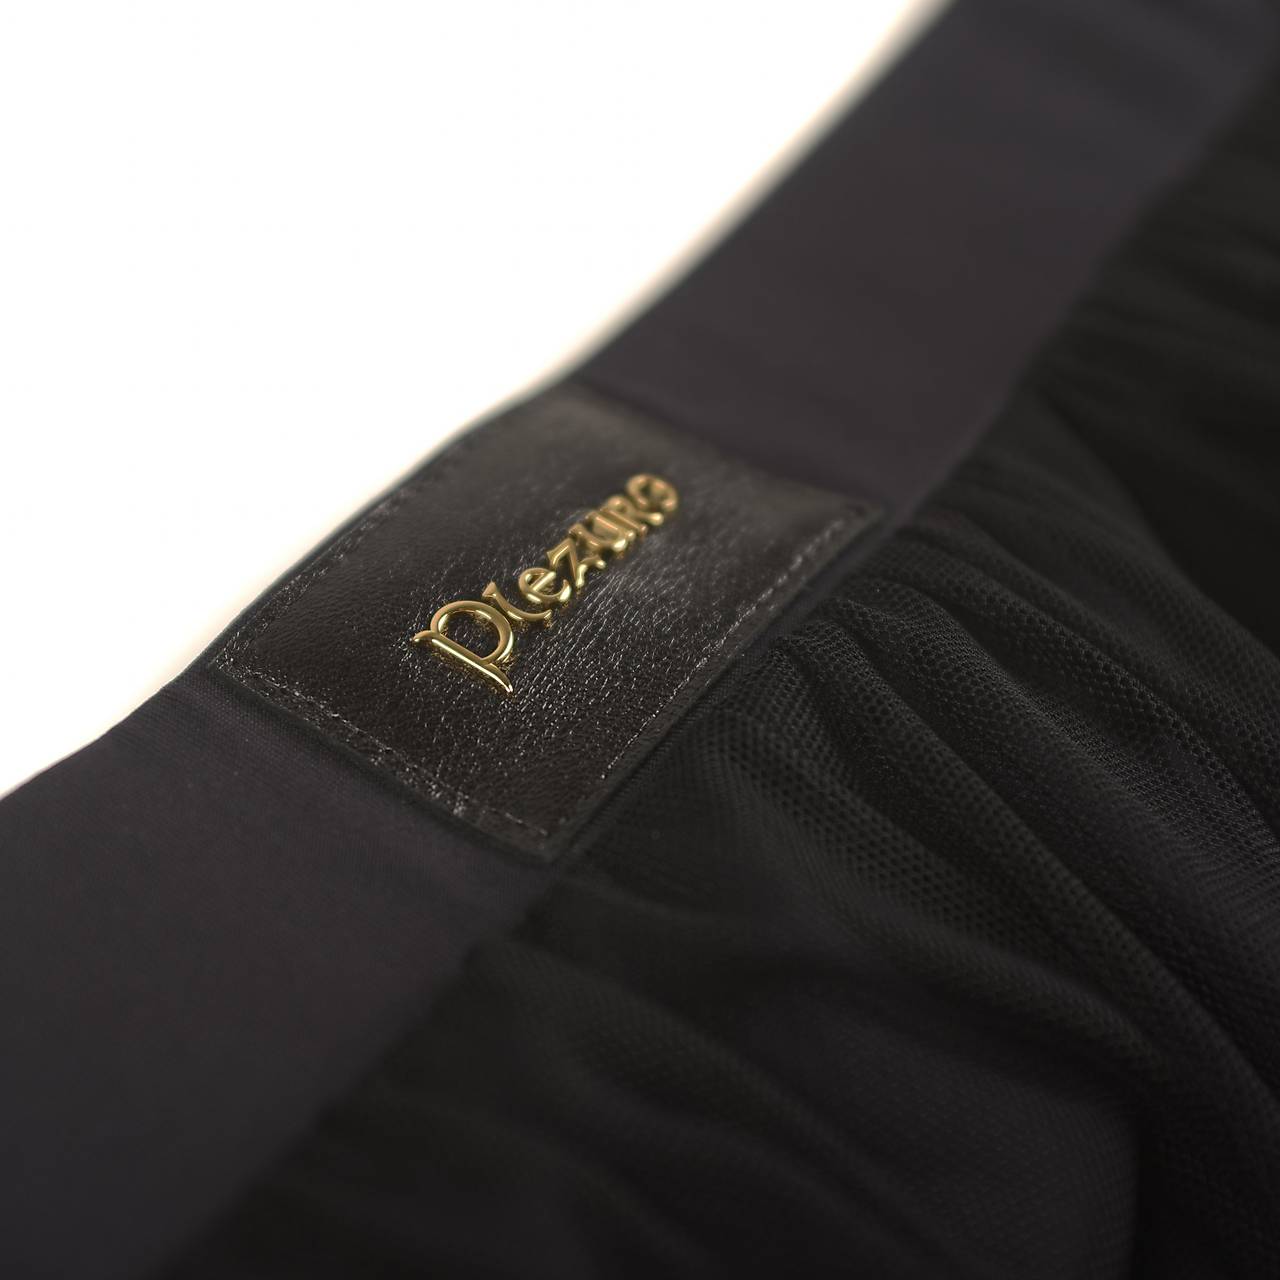 Sieťková dlhá sukňa so šortkami čierna